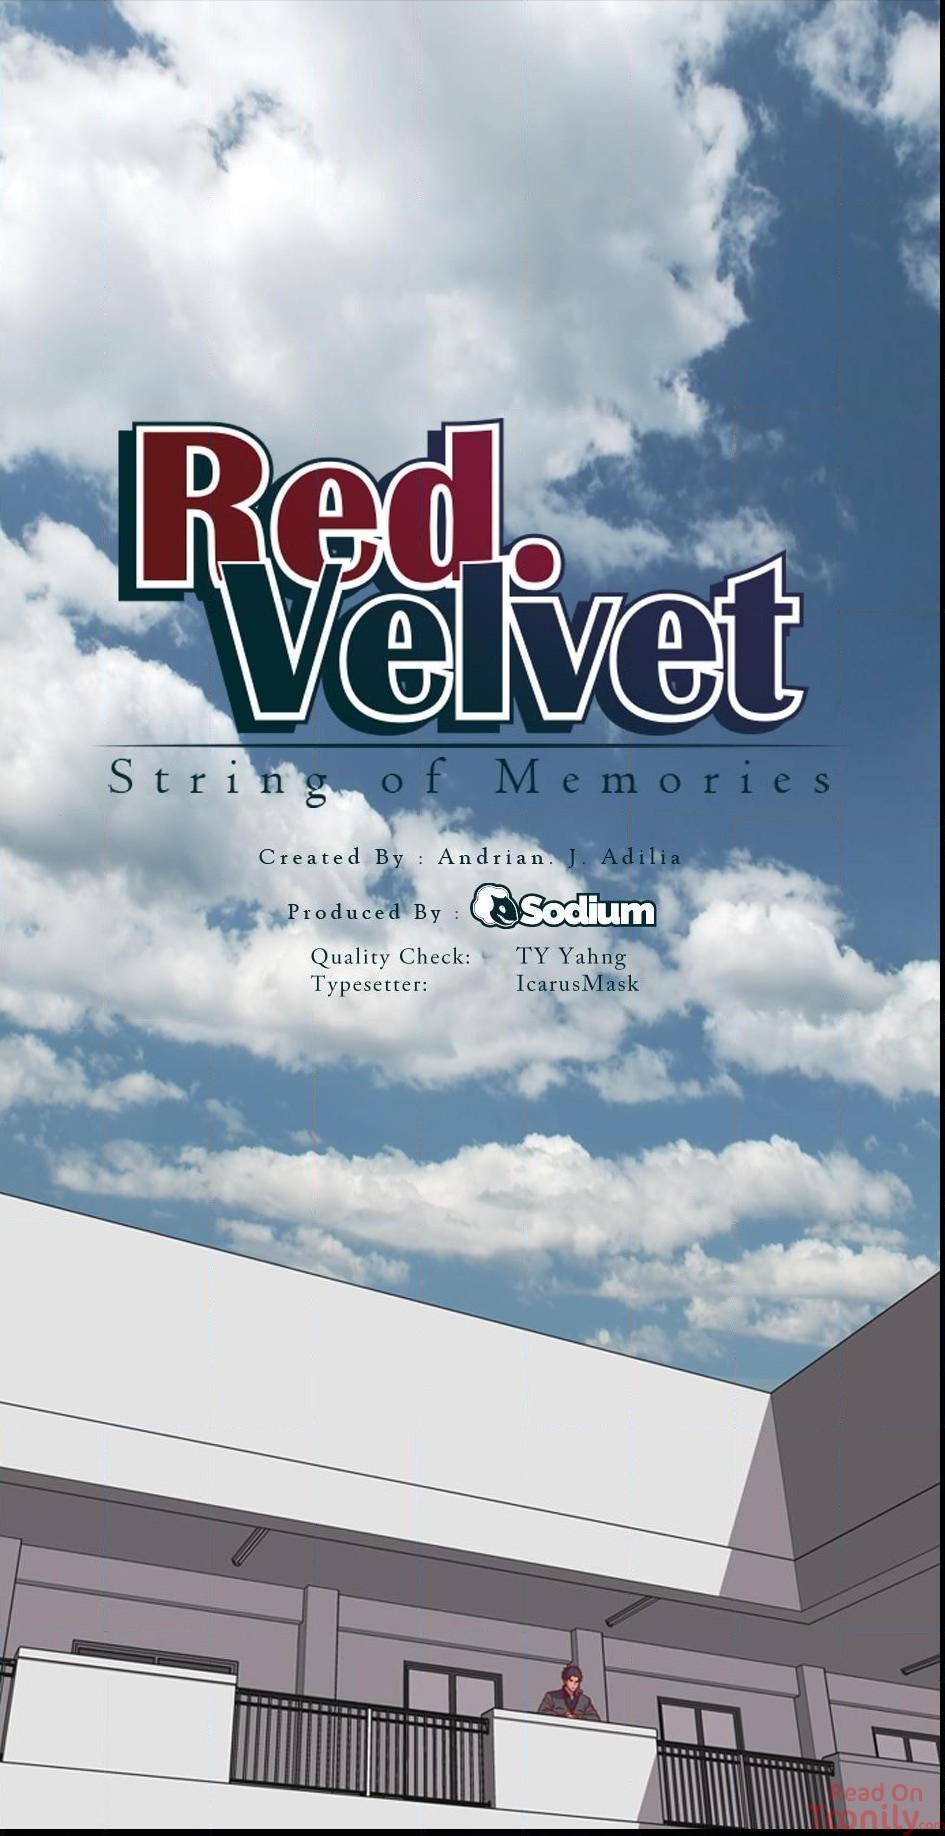 Red Velvet image